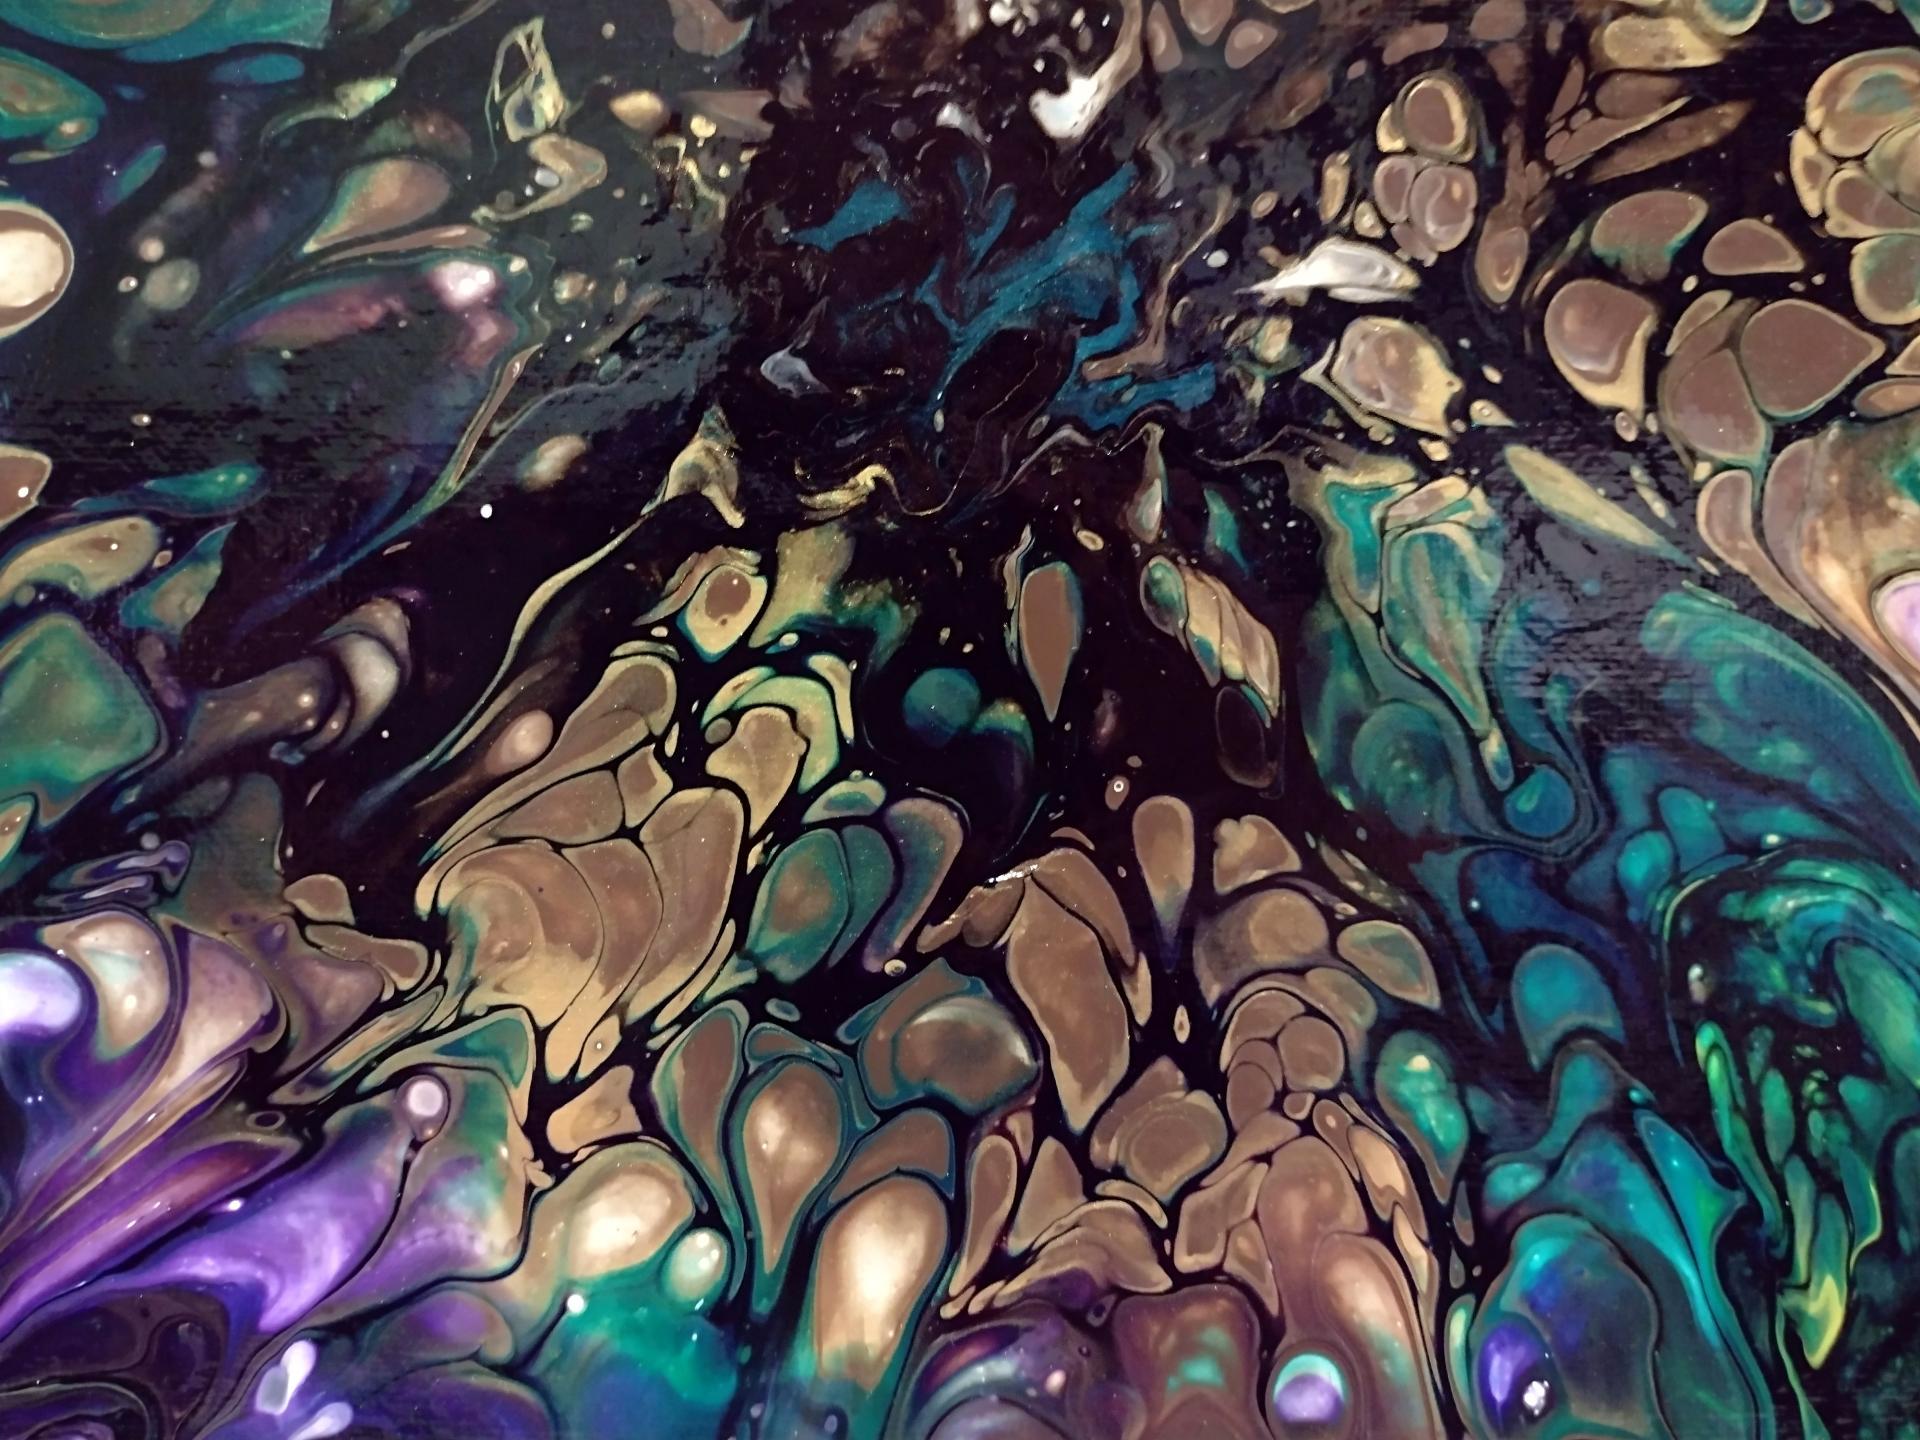 Rainbow Bubbles I Abstract Acrylic Painting, 12" x 12"